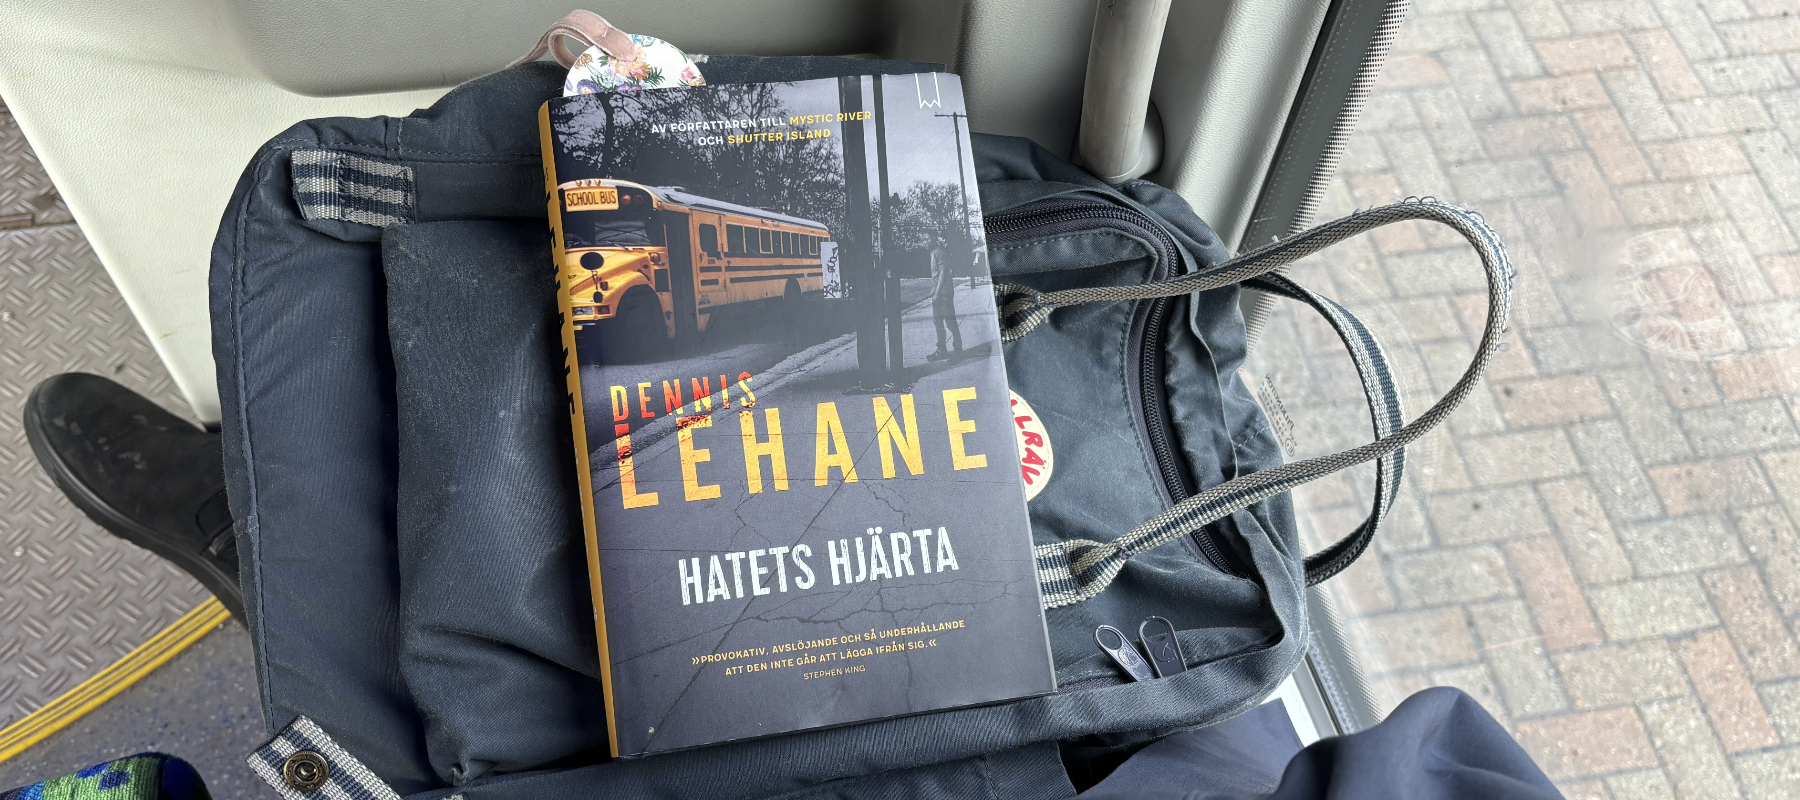 Recension av Dennis Lehanes thriller "Hatets hjärta"